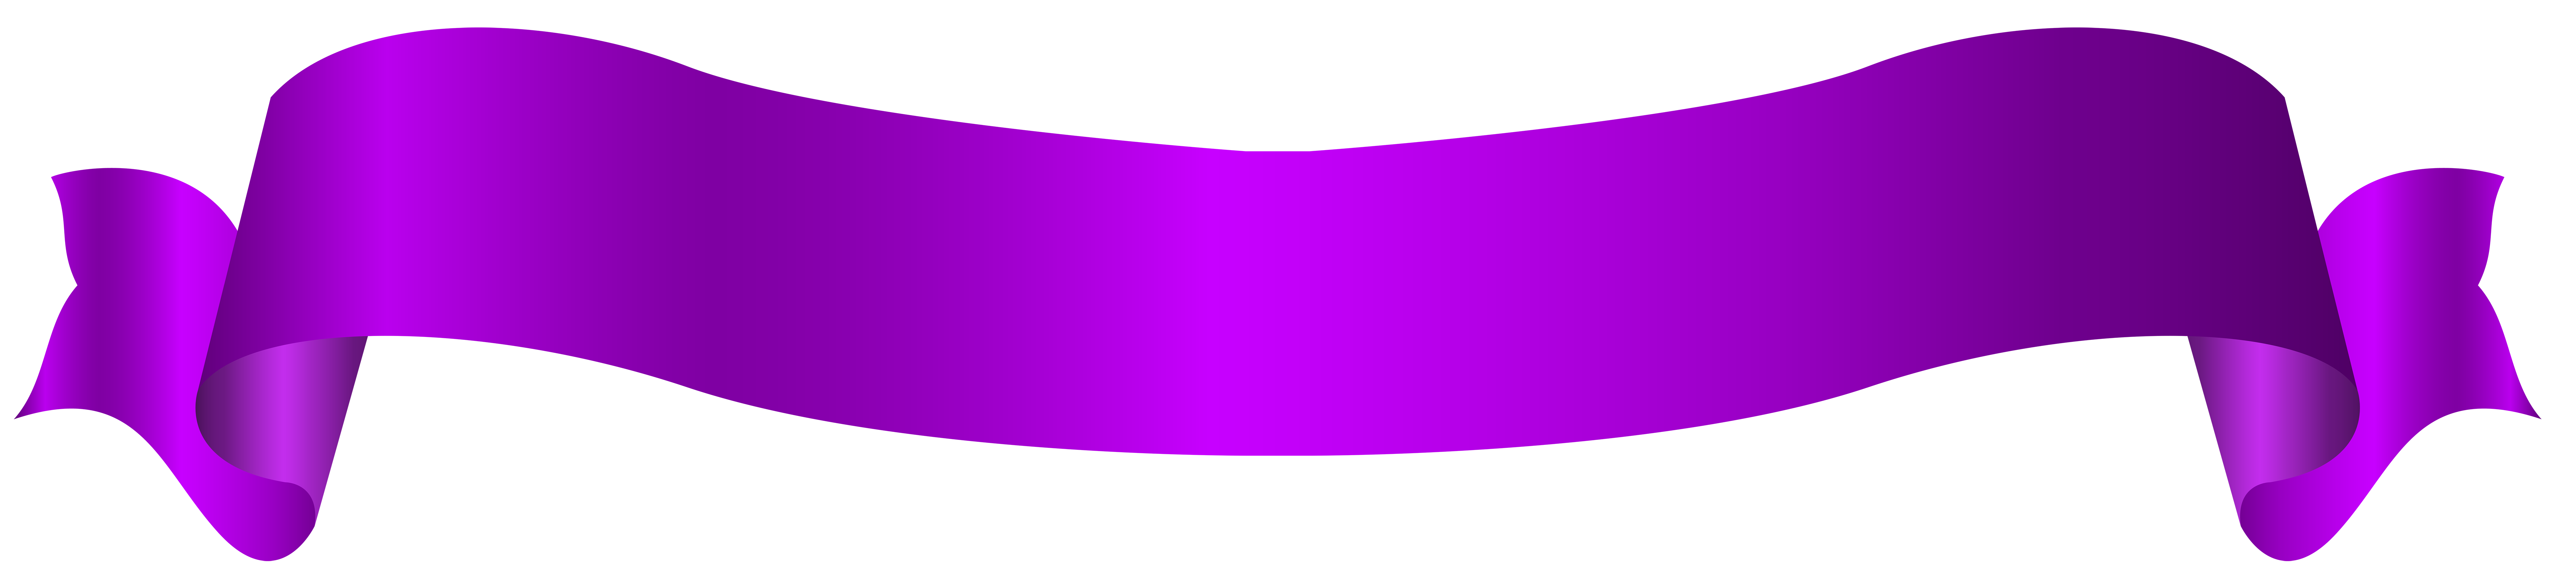 Imagem de PNG da bandeira violeta